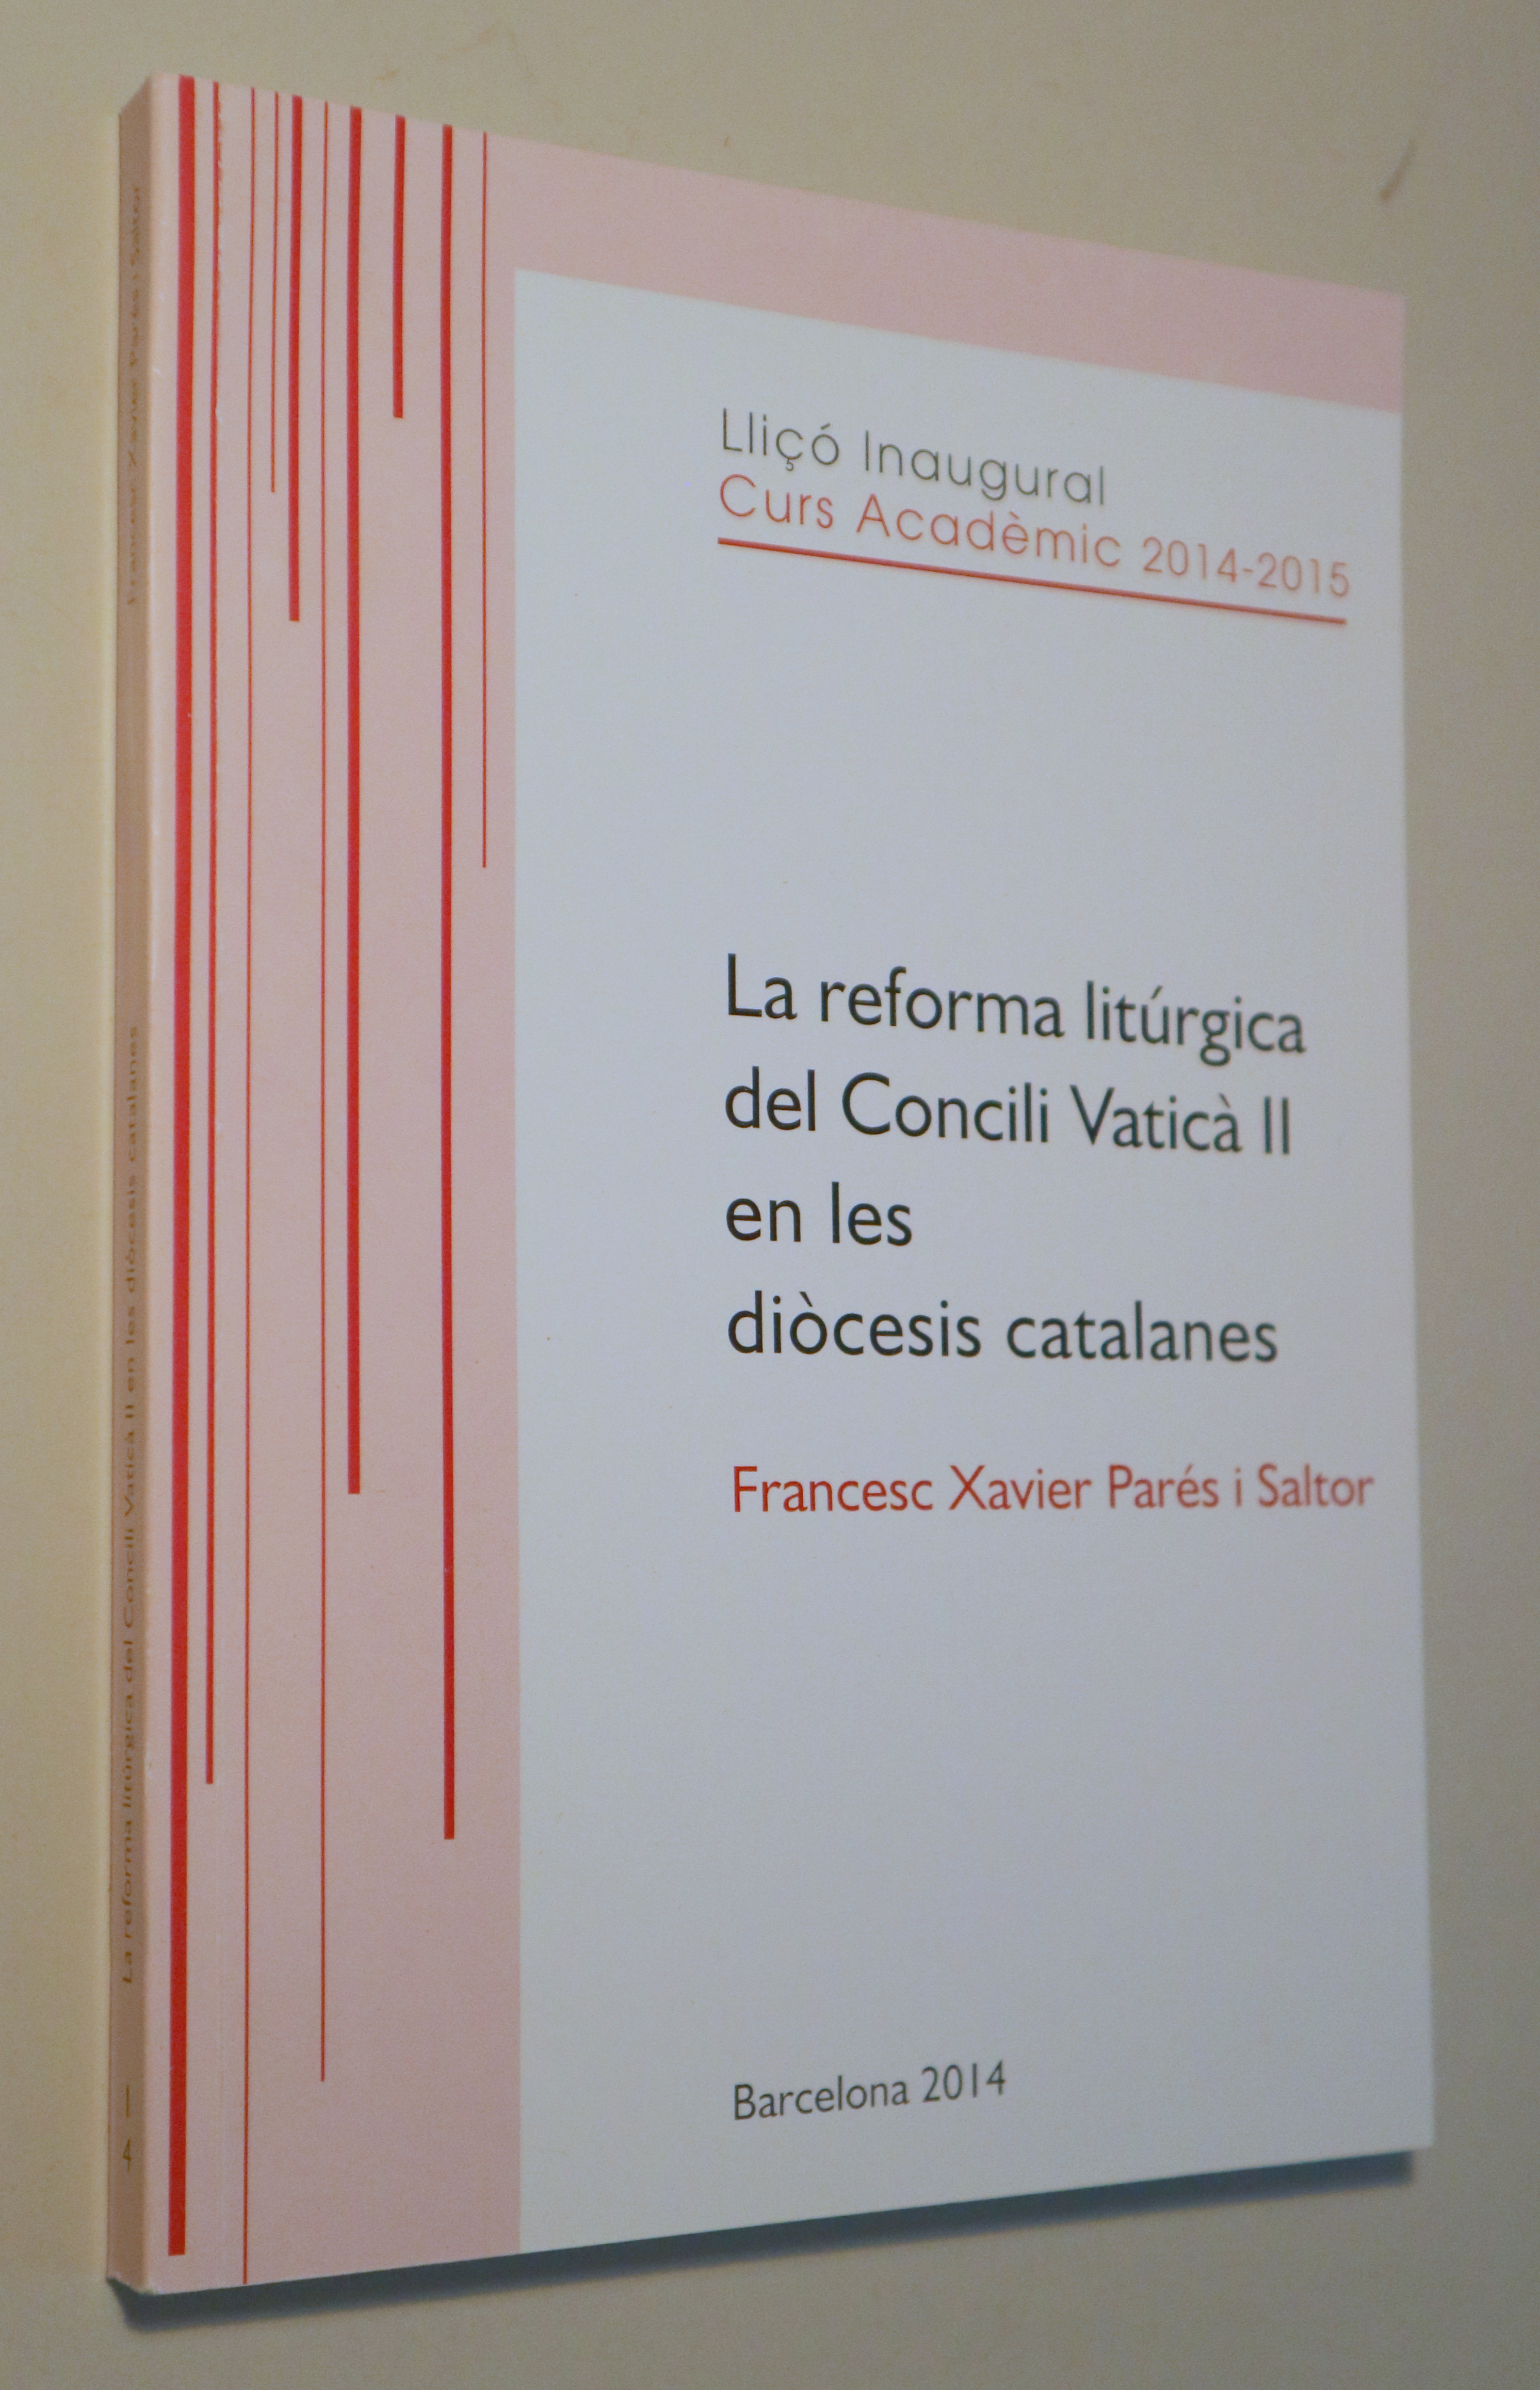 LA REFORMA LITÚRGICA DEL CONCILI VATICÀ II EN LES DIÒCESIS CATALANES  - Barcelona 2014